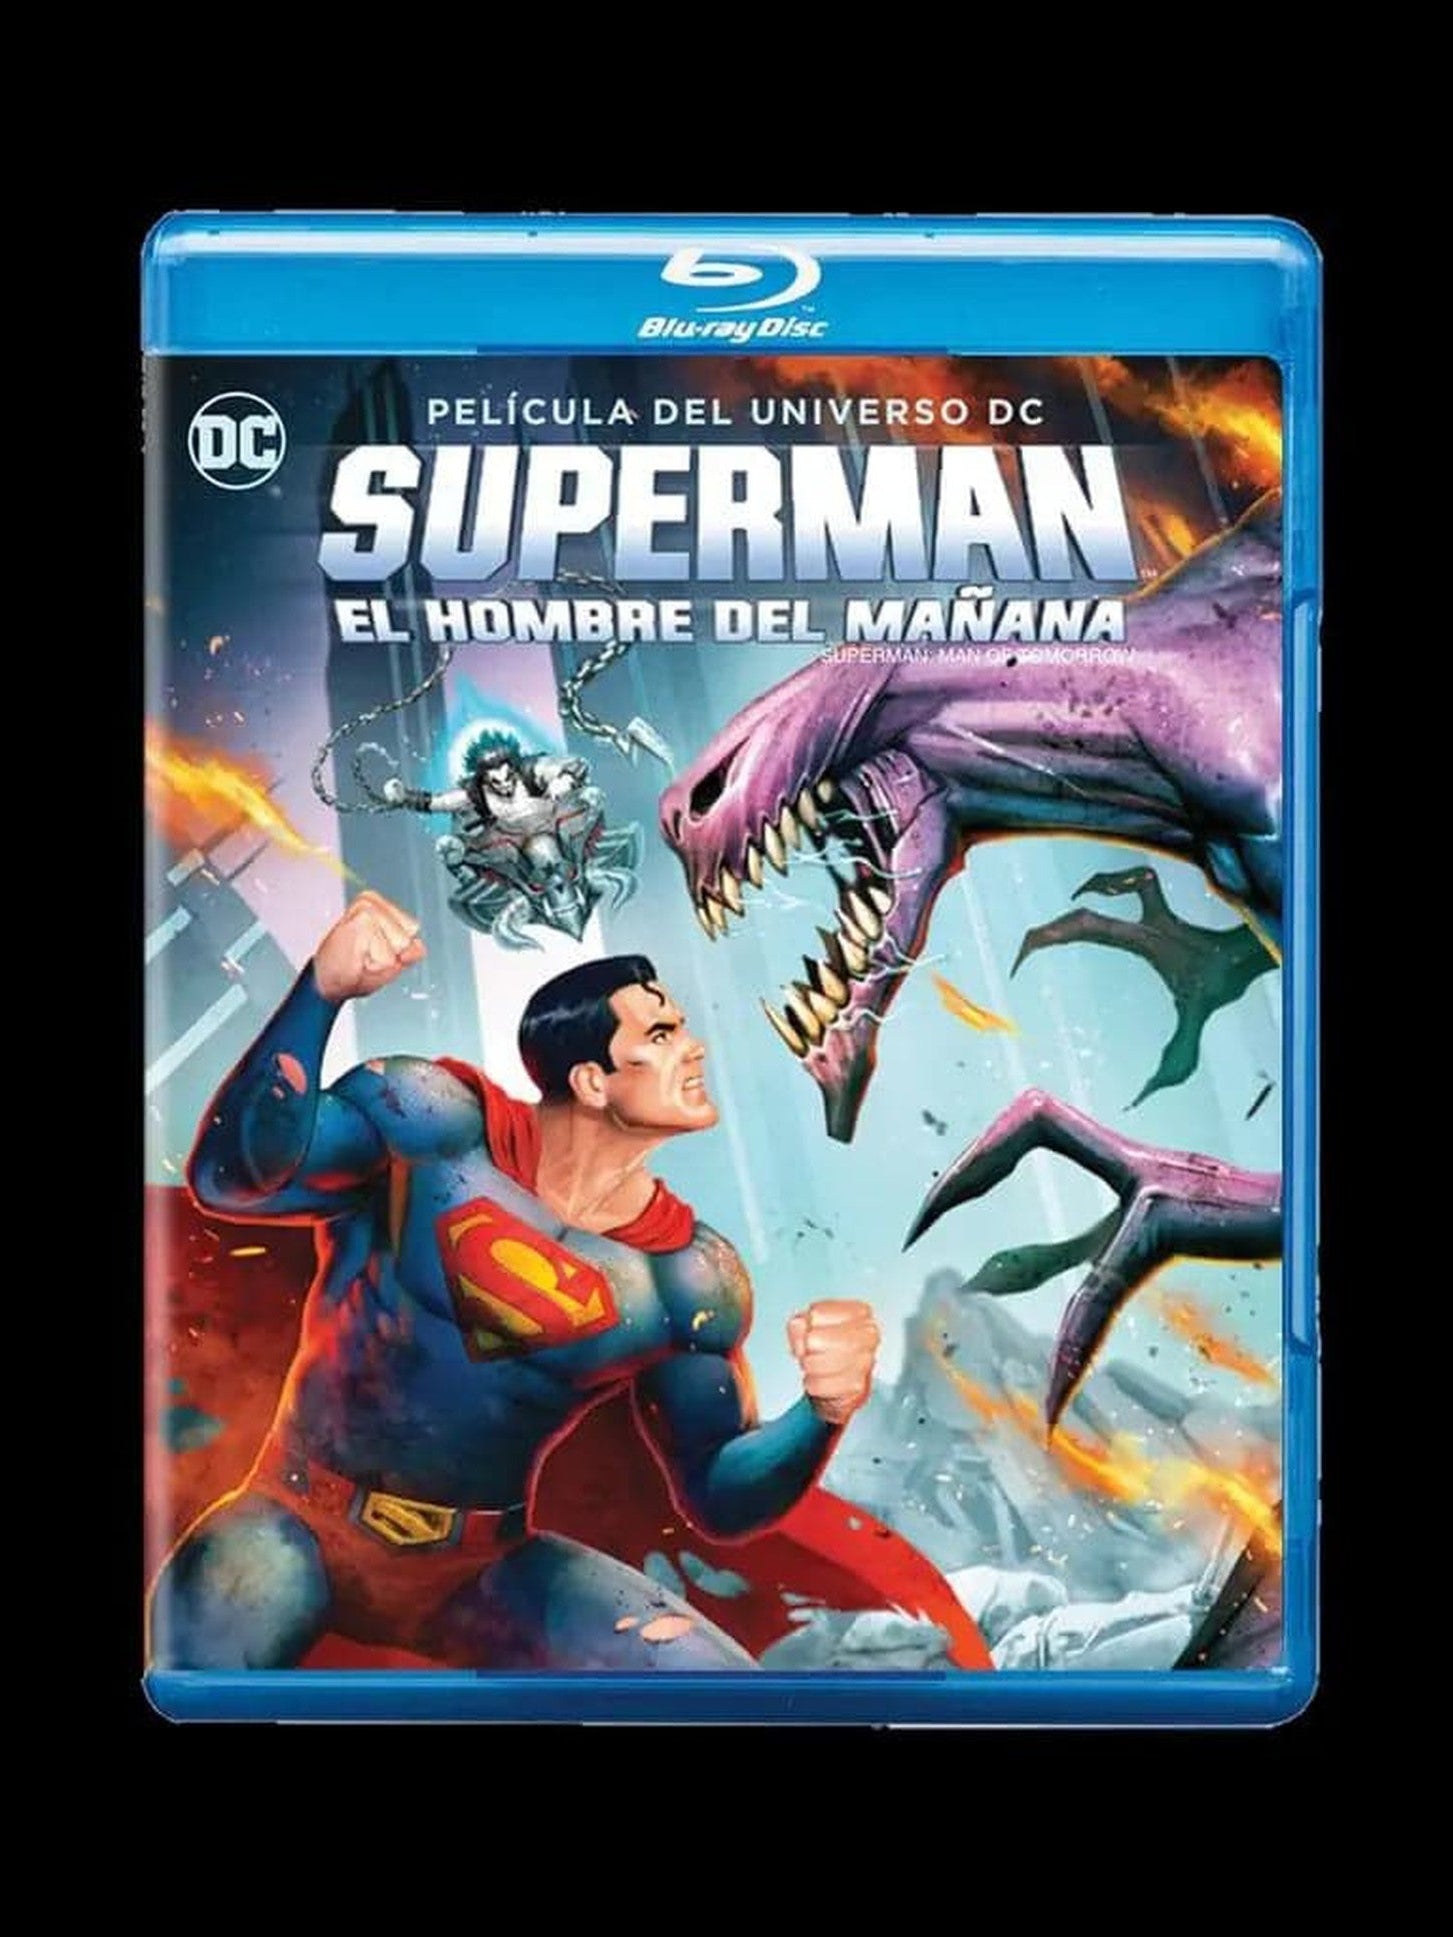 El Hombre del Mañana (Superman: Man of Tomorrow) - Bluray